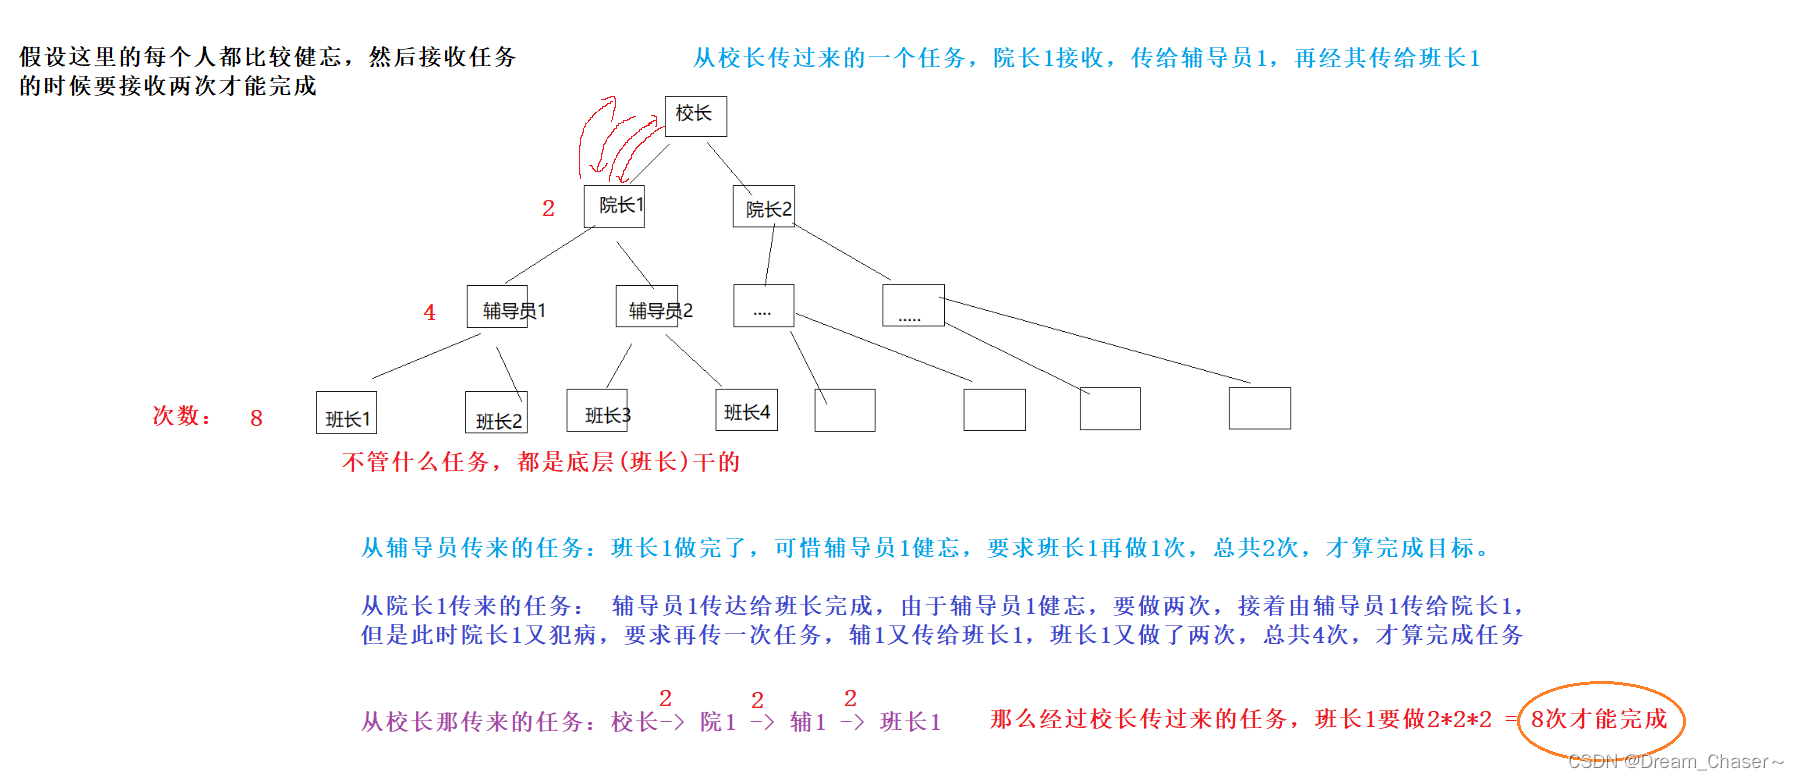 【数据结构与算法】two X 树的遍历以及功能实现（下）